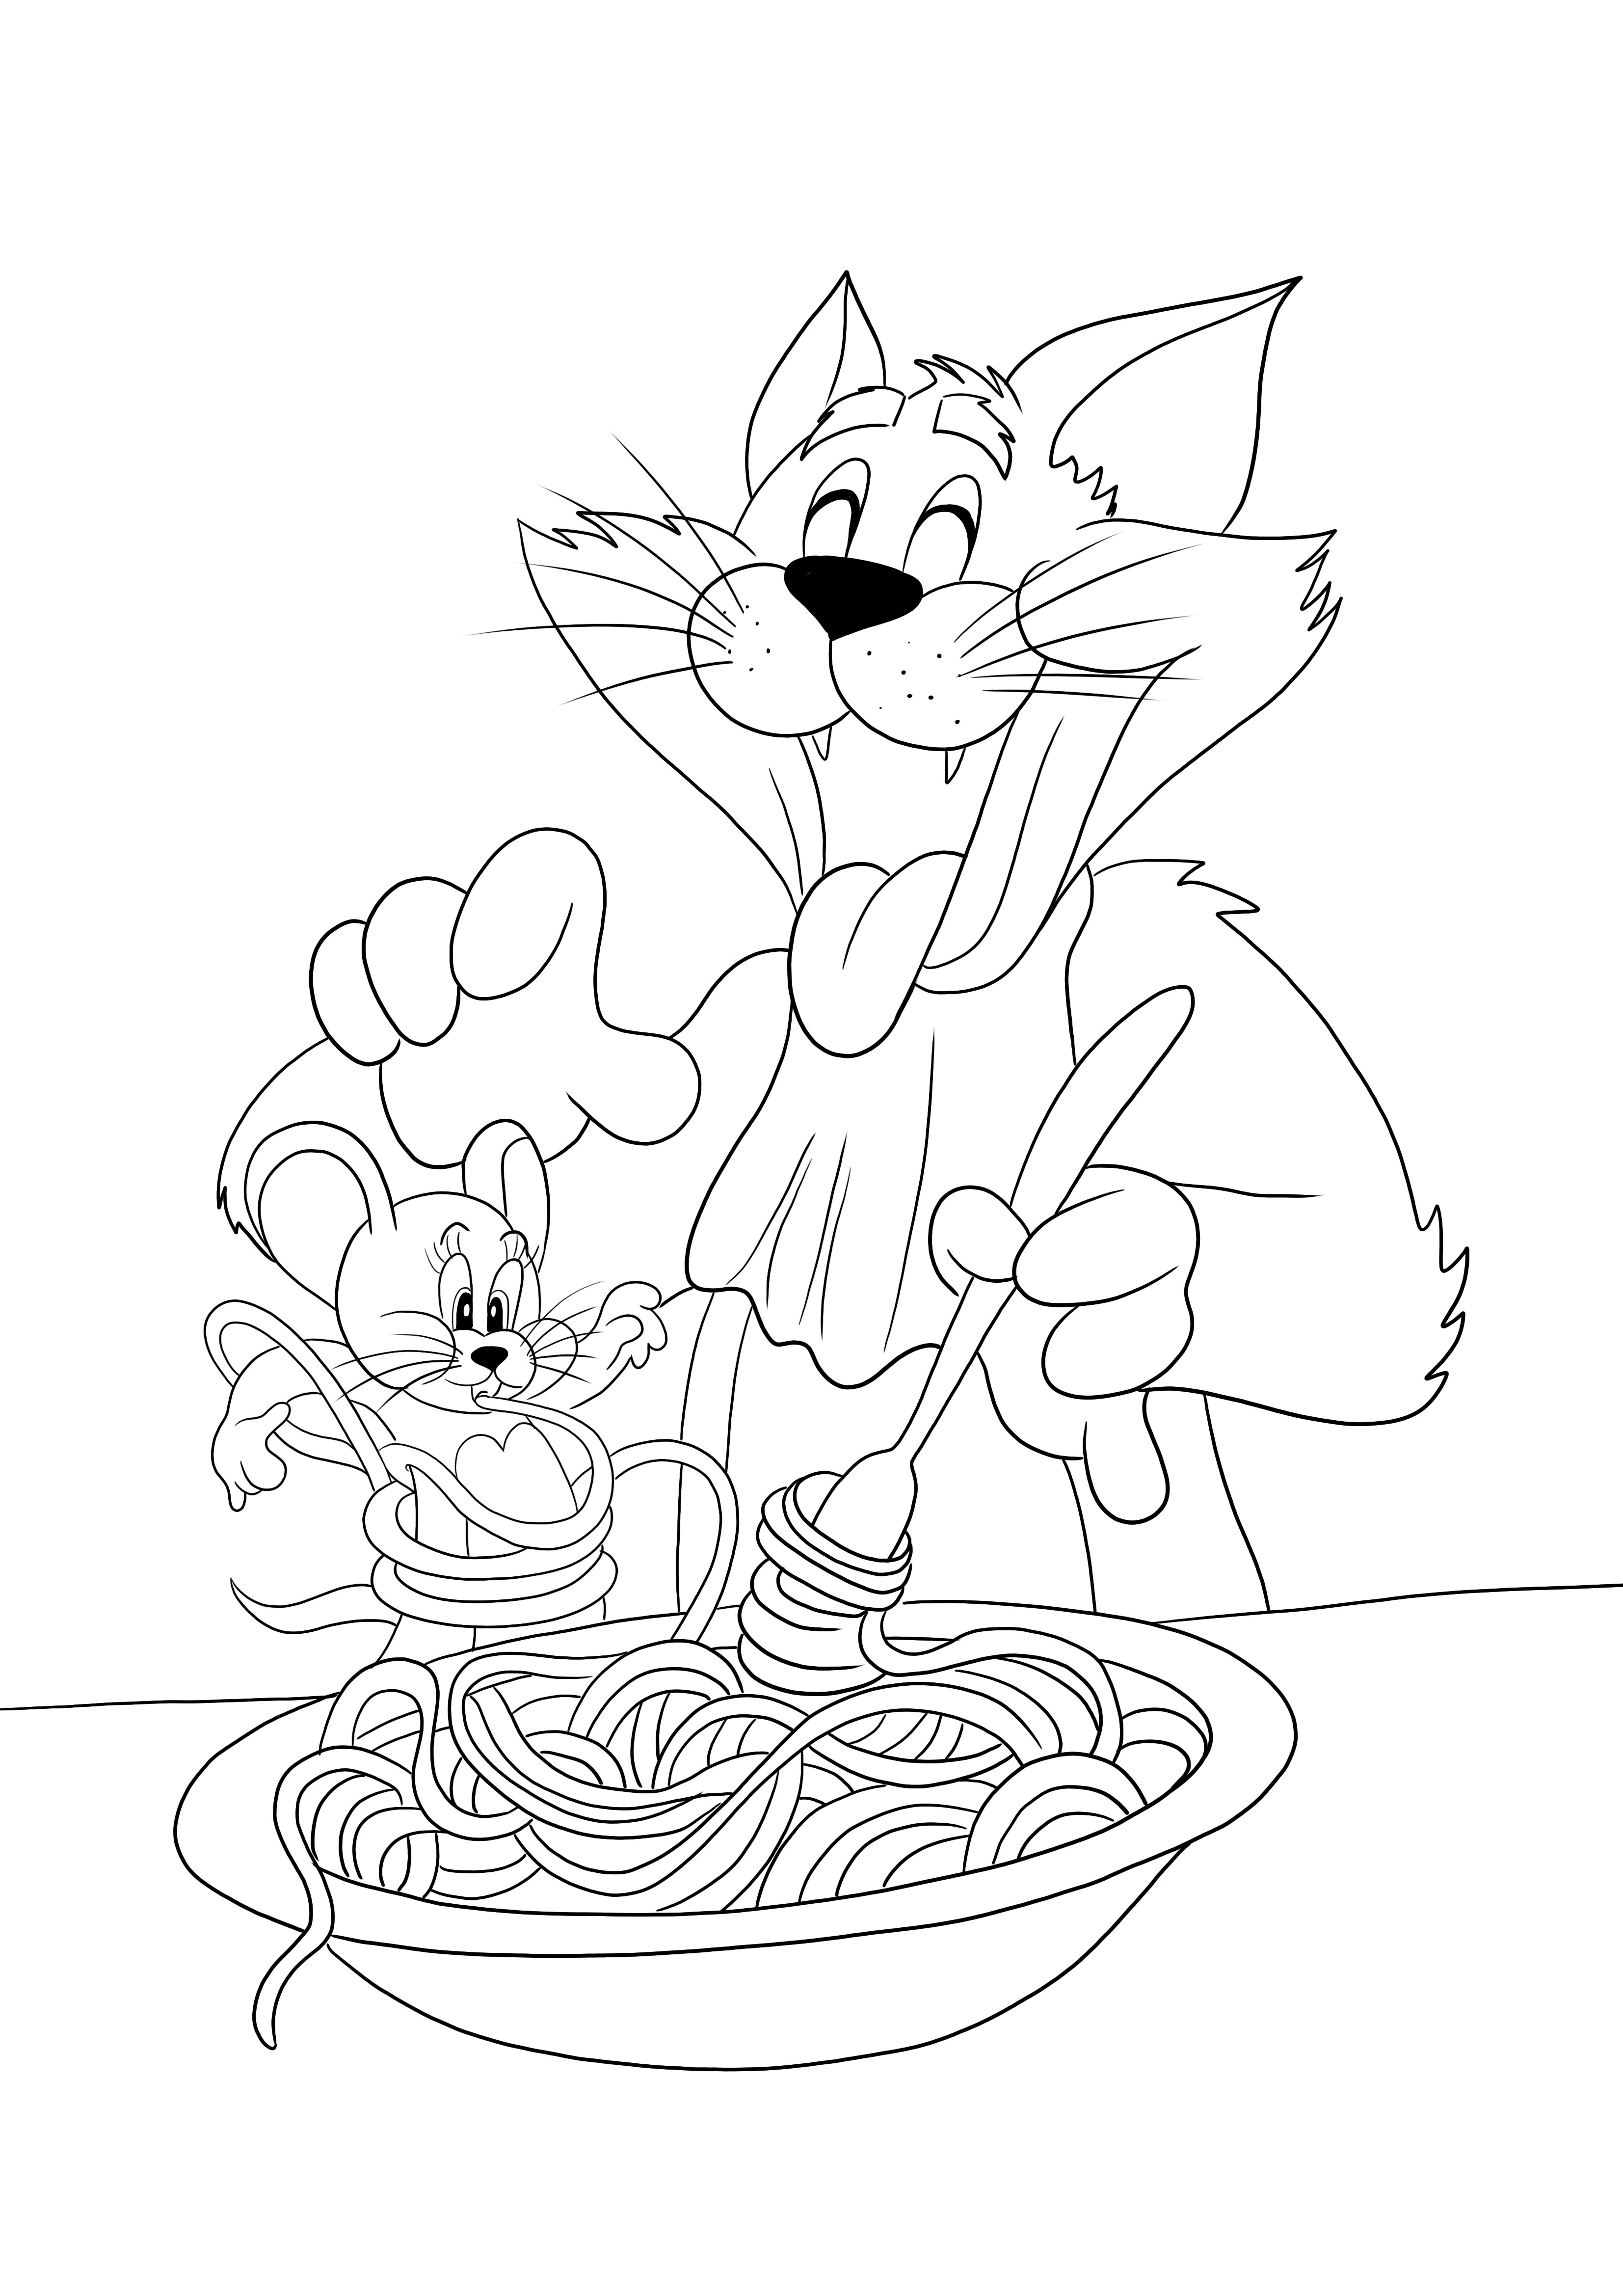 Tom je makaron, a Jerry — zabawna, gotowa do pokolorowania grafika do wydrukowania